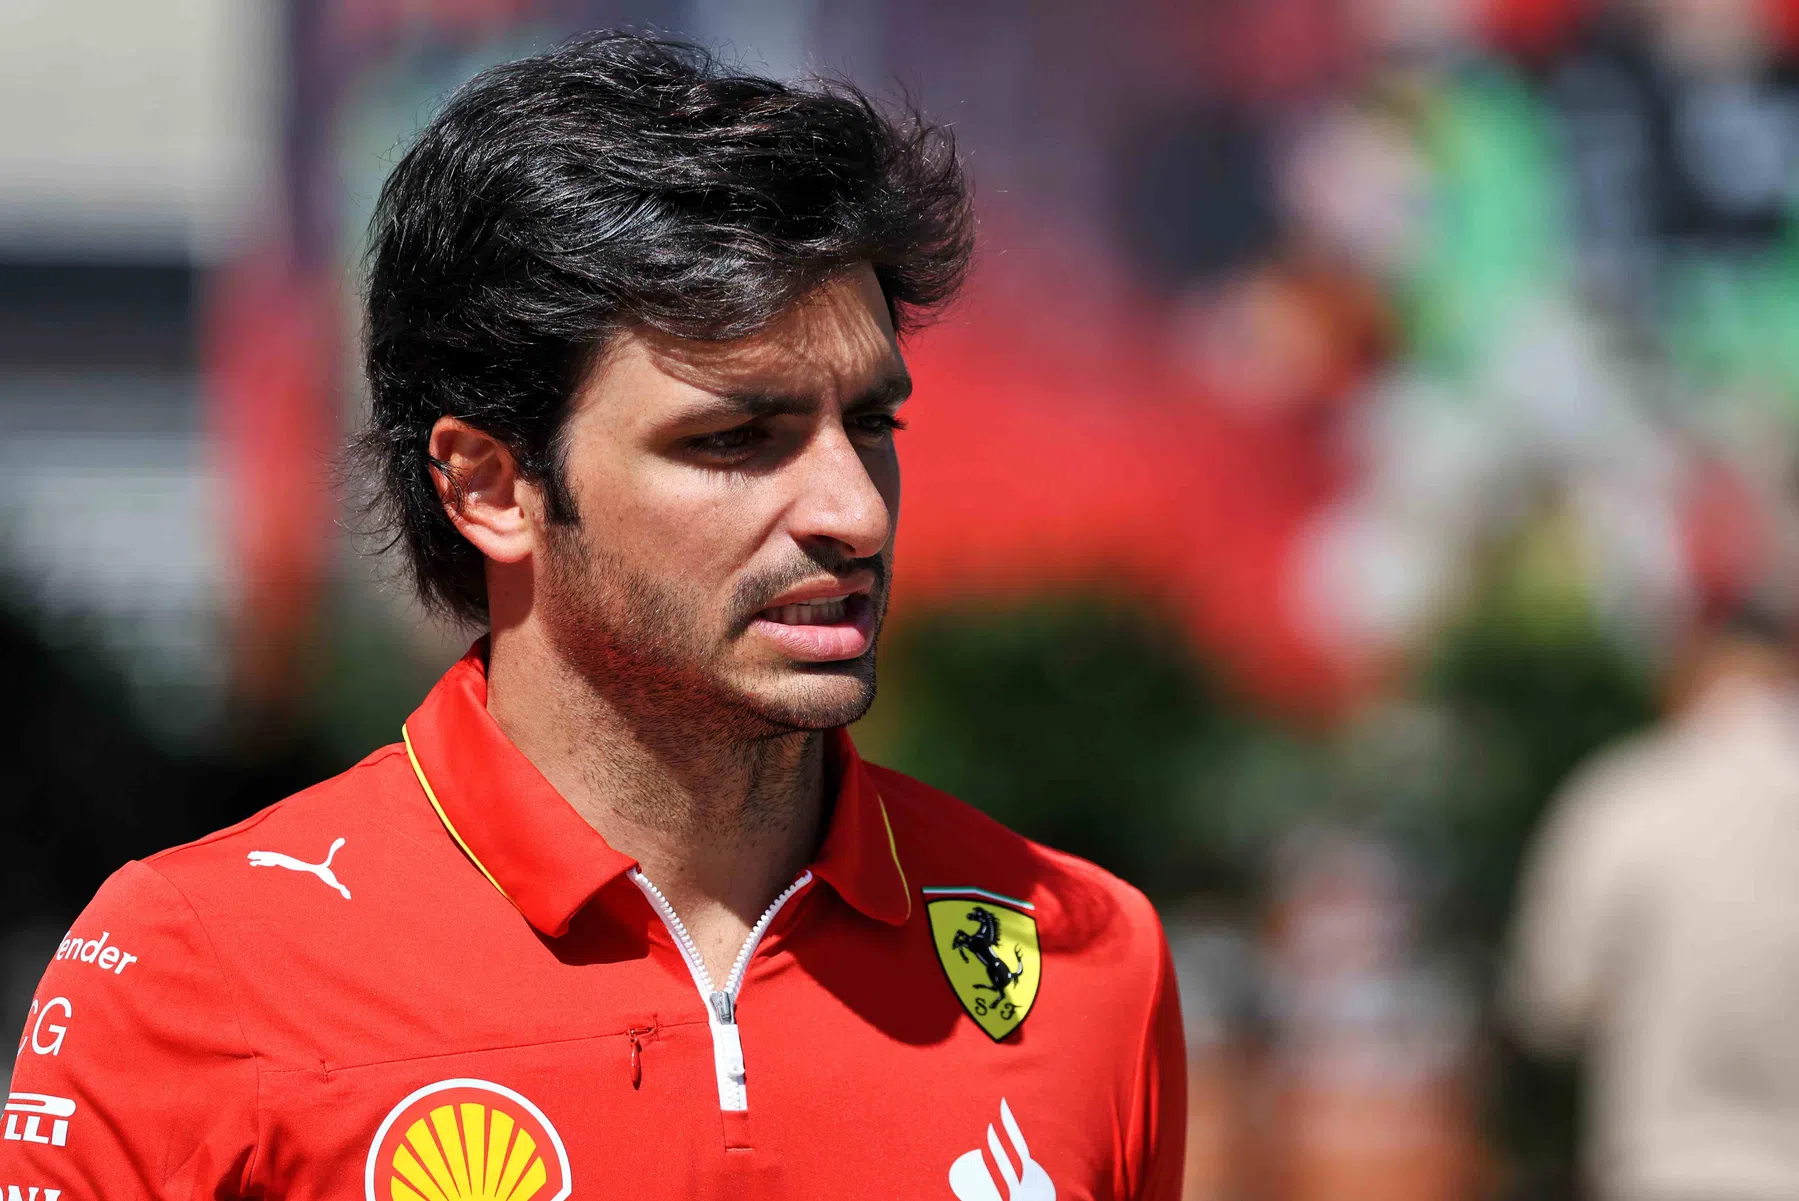 La ampliación del contrato de Alonso no cambia los planes de Sainz